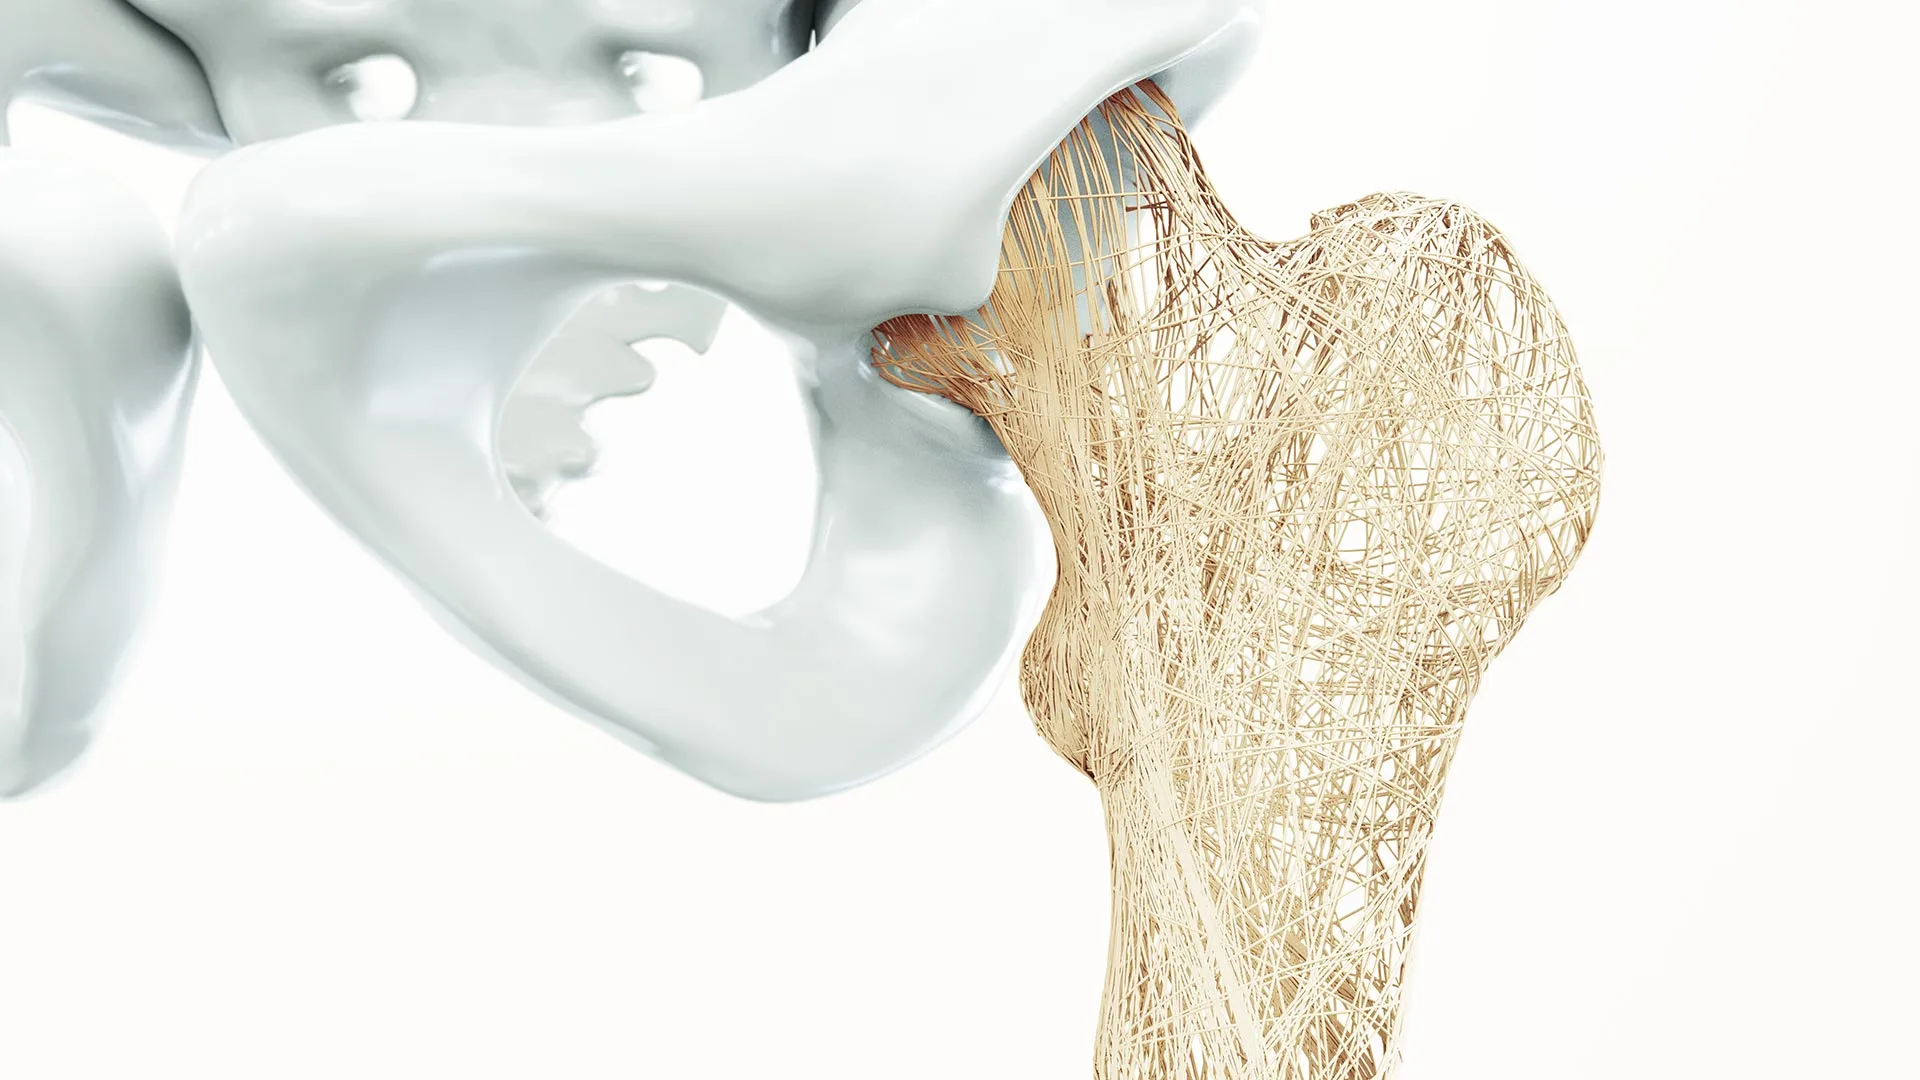 Experten Netzwerk Osteoporose Bild artifizielle Knochenstruktur Oberschenkelknochen